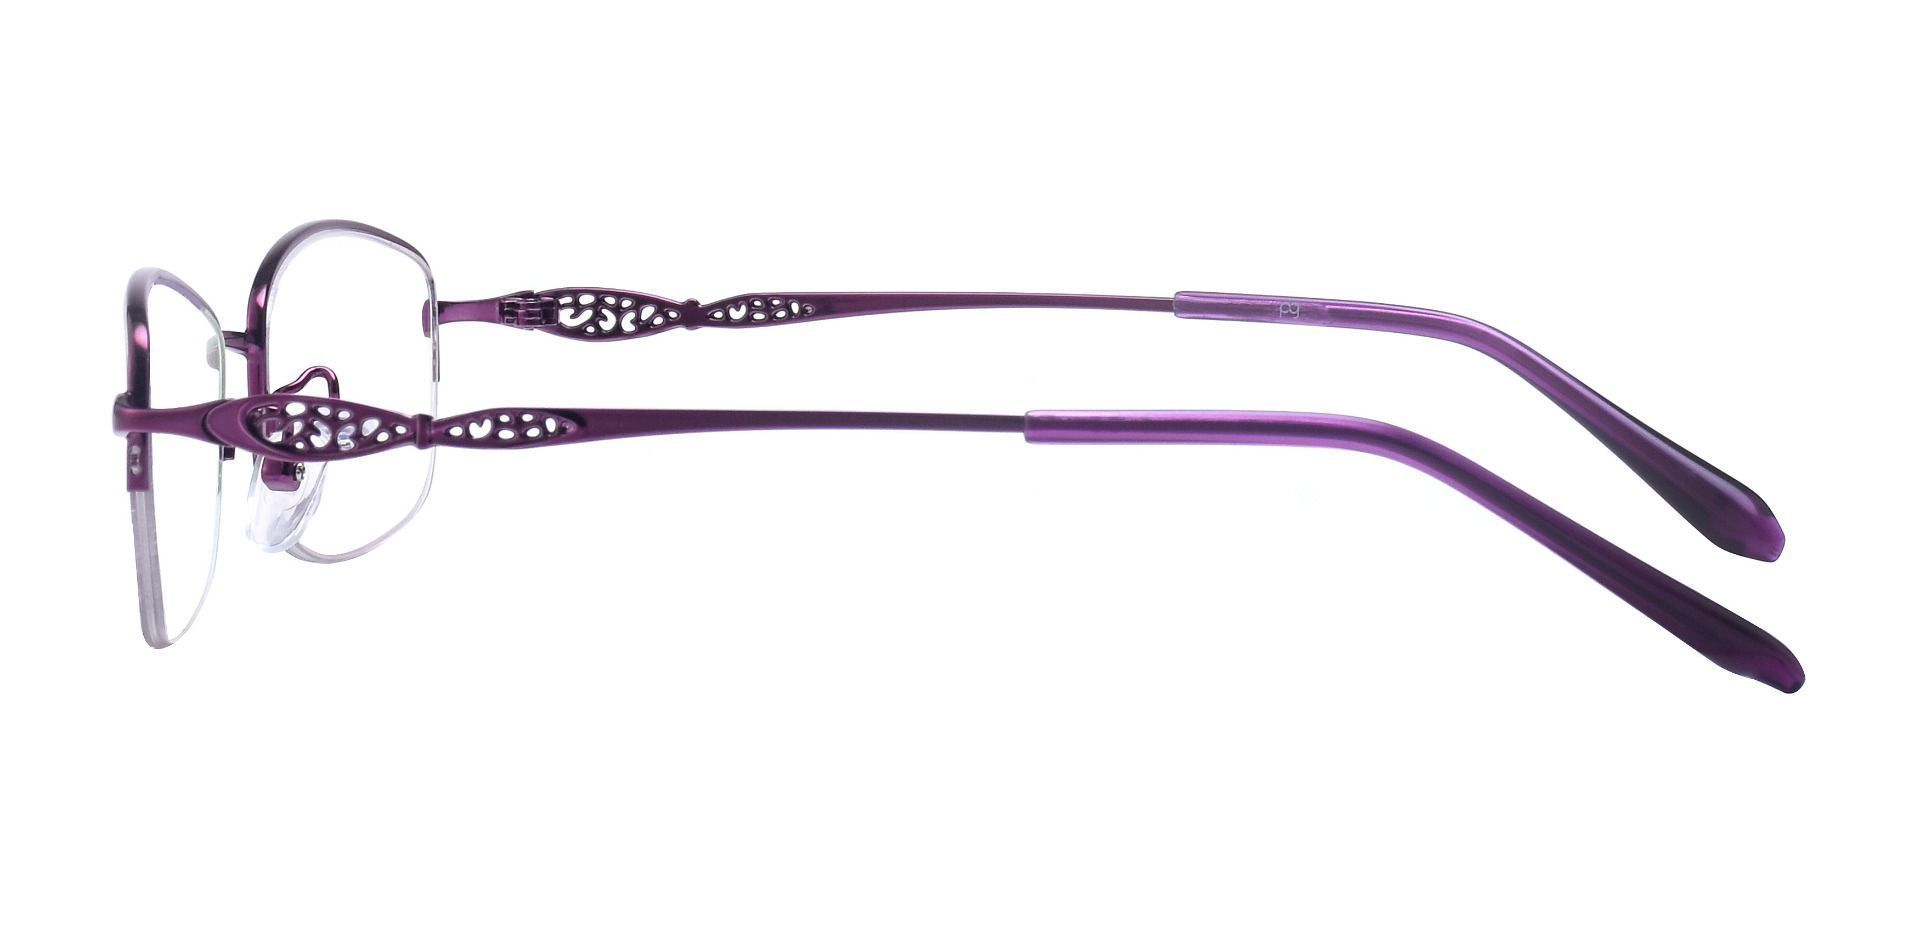 Blanche Oval Prescription Glasses - Purple